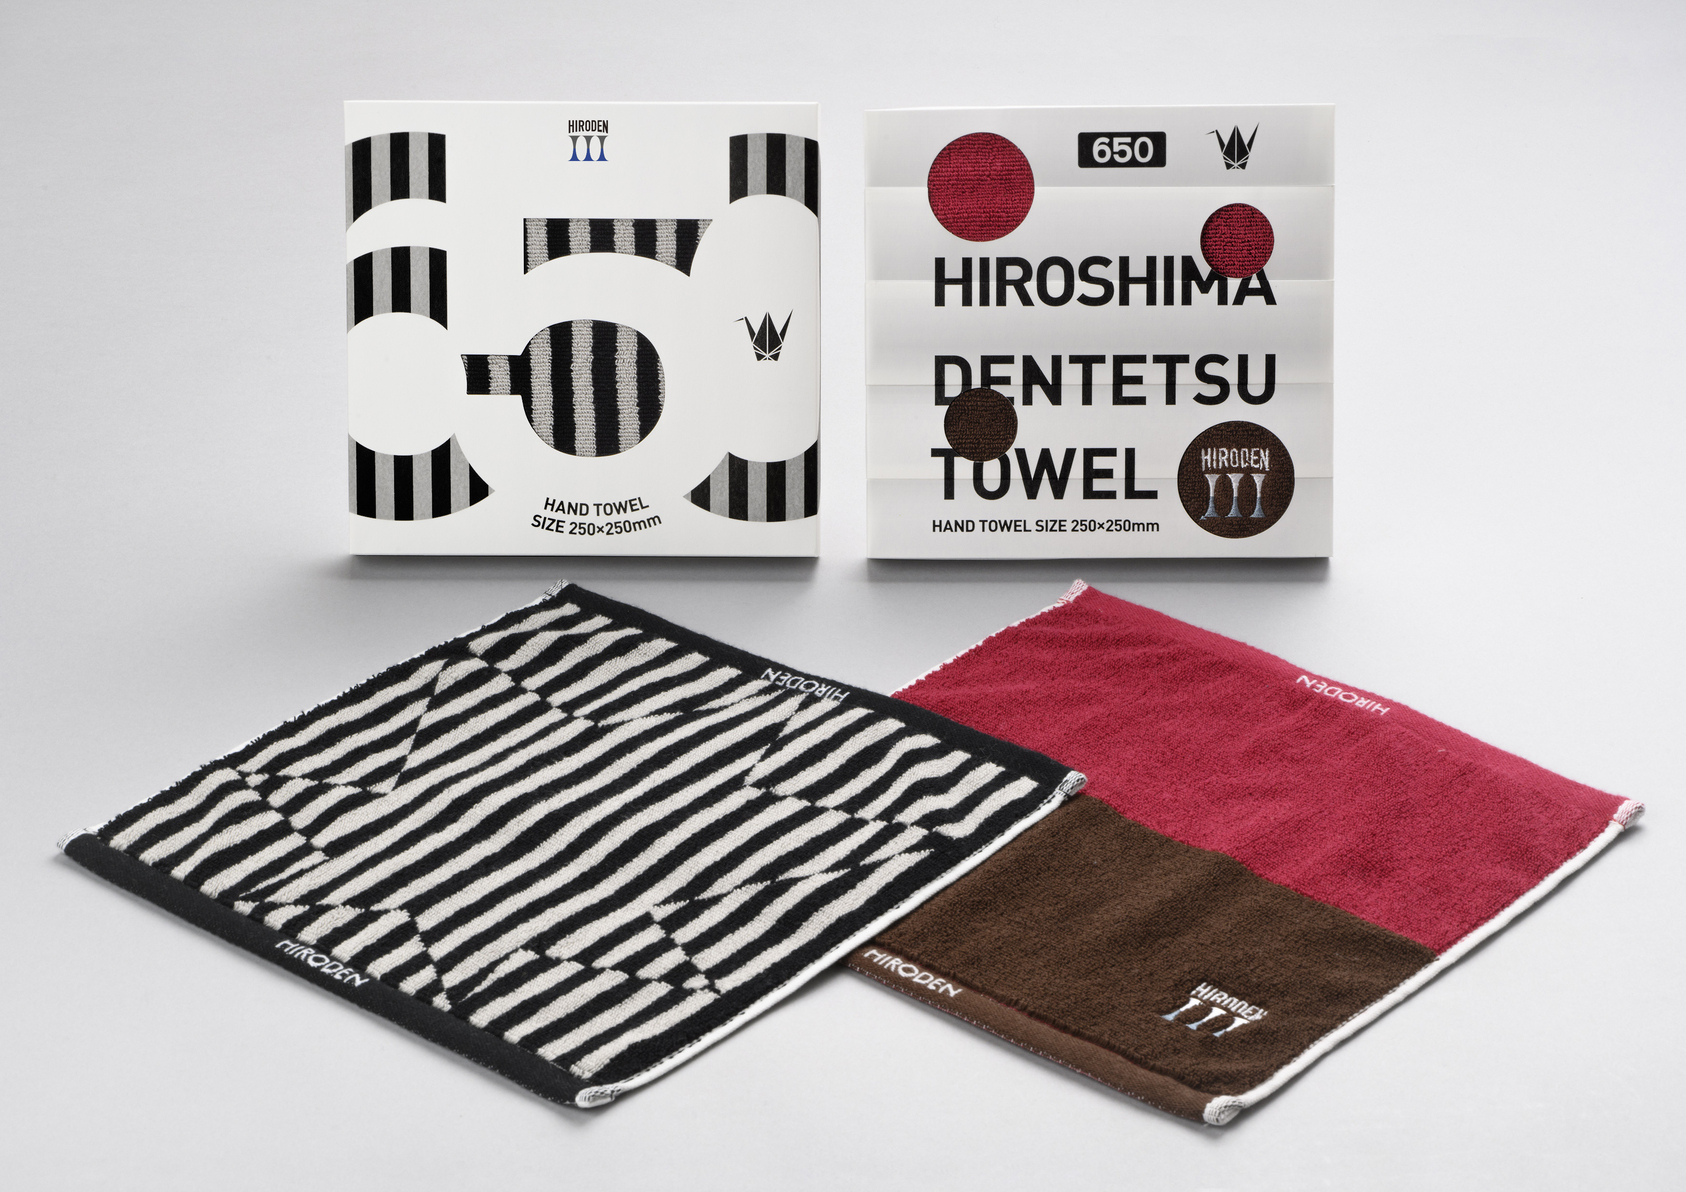 HIROSHIMA DENTETSU TOWEL-1